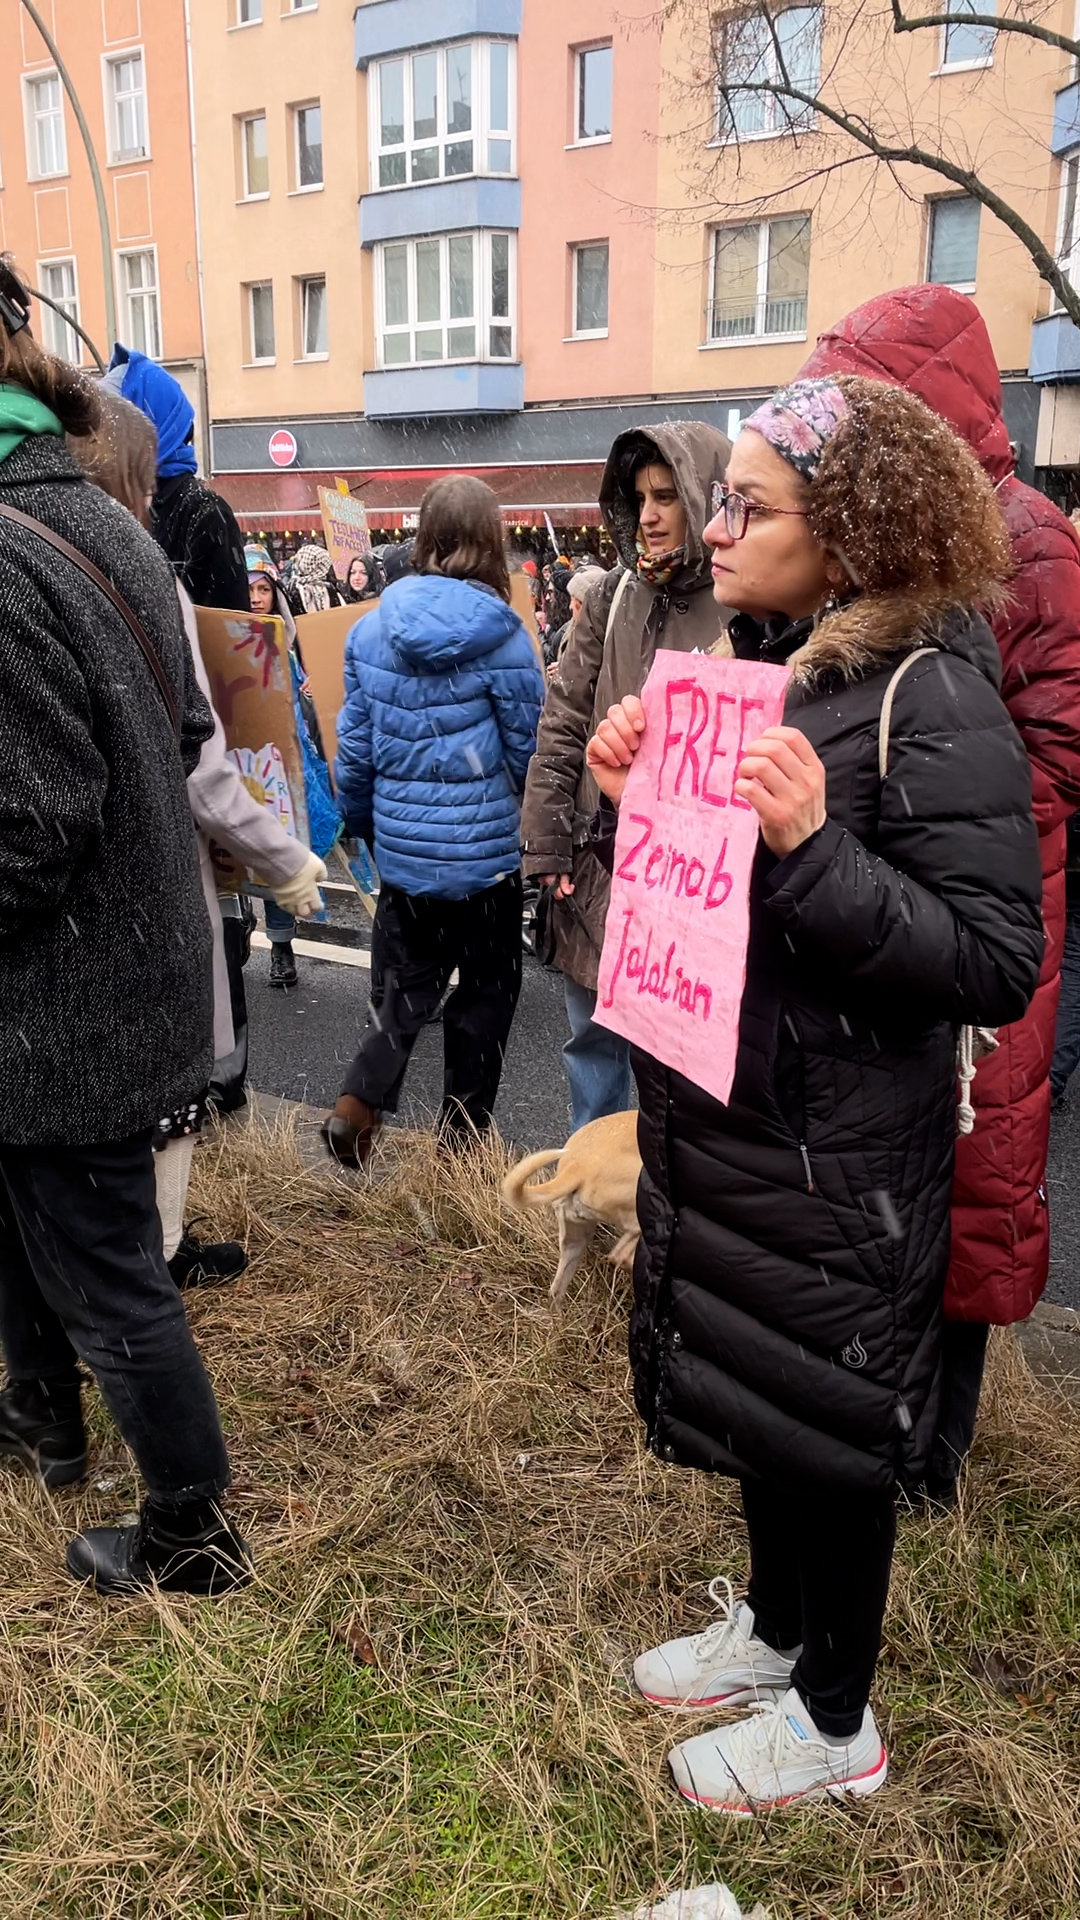 Eine Frau steht auf einem Mittelstreifen. Sie trägt ein Stofftuch, das ihre lockigen Haare zurückhält und eine Brille. Sie hält ein pinkes Schild mit der Aufschrift "FREE Zeinab Jalalian". Sie steht in einer Menschenmenge. Es schneit.